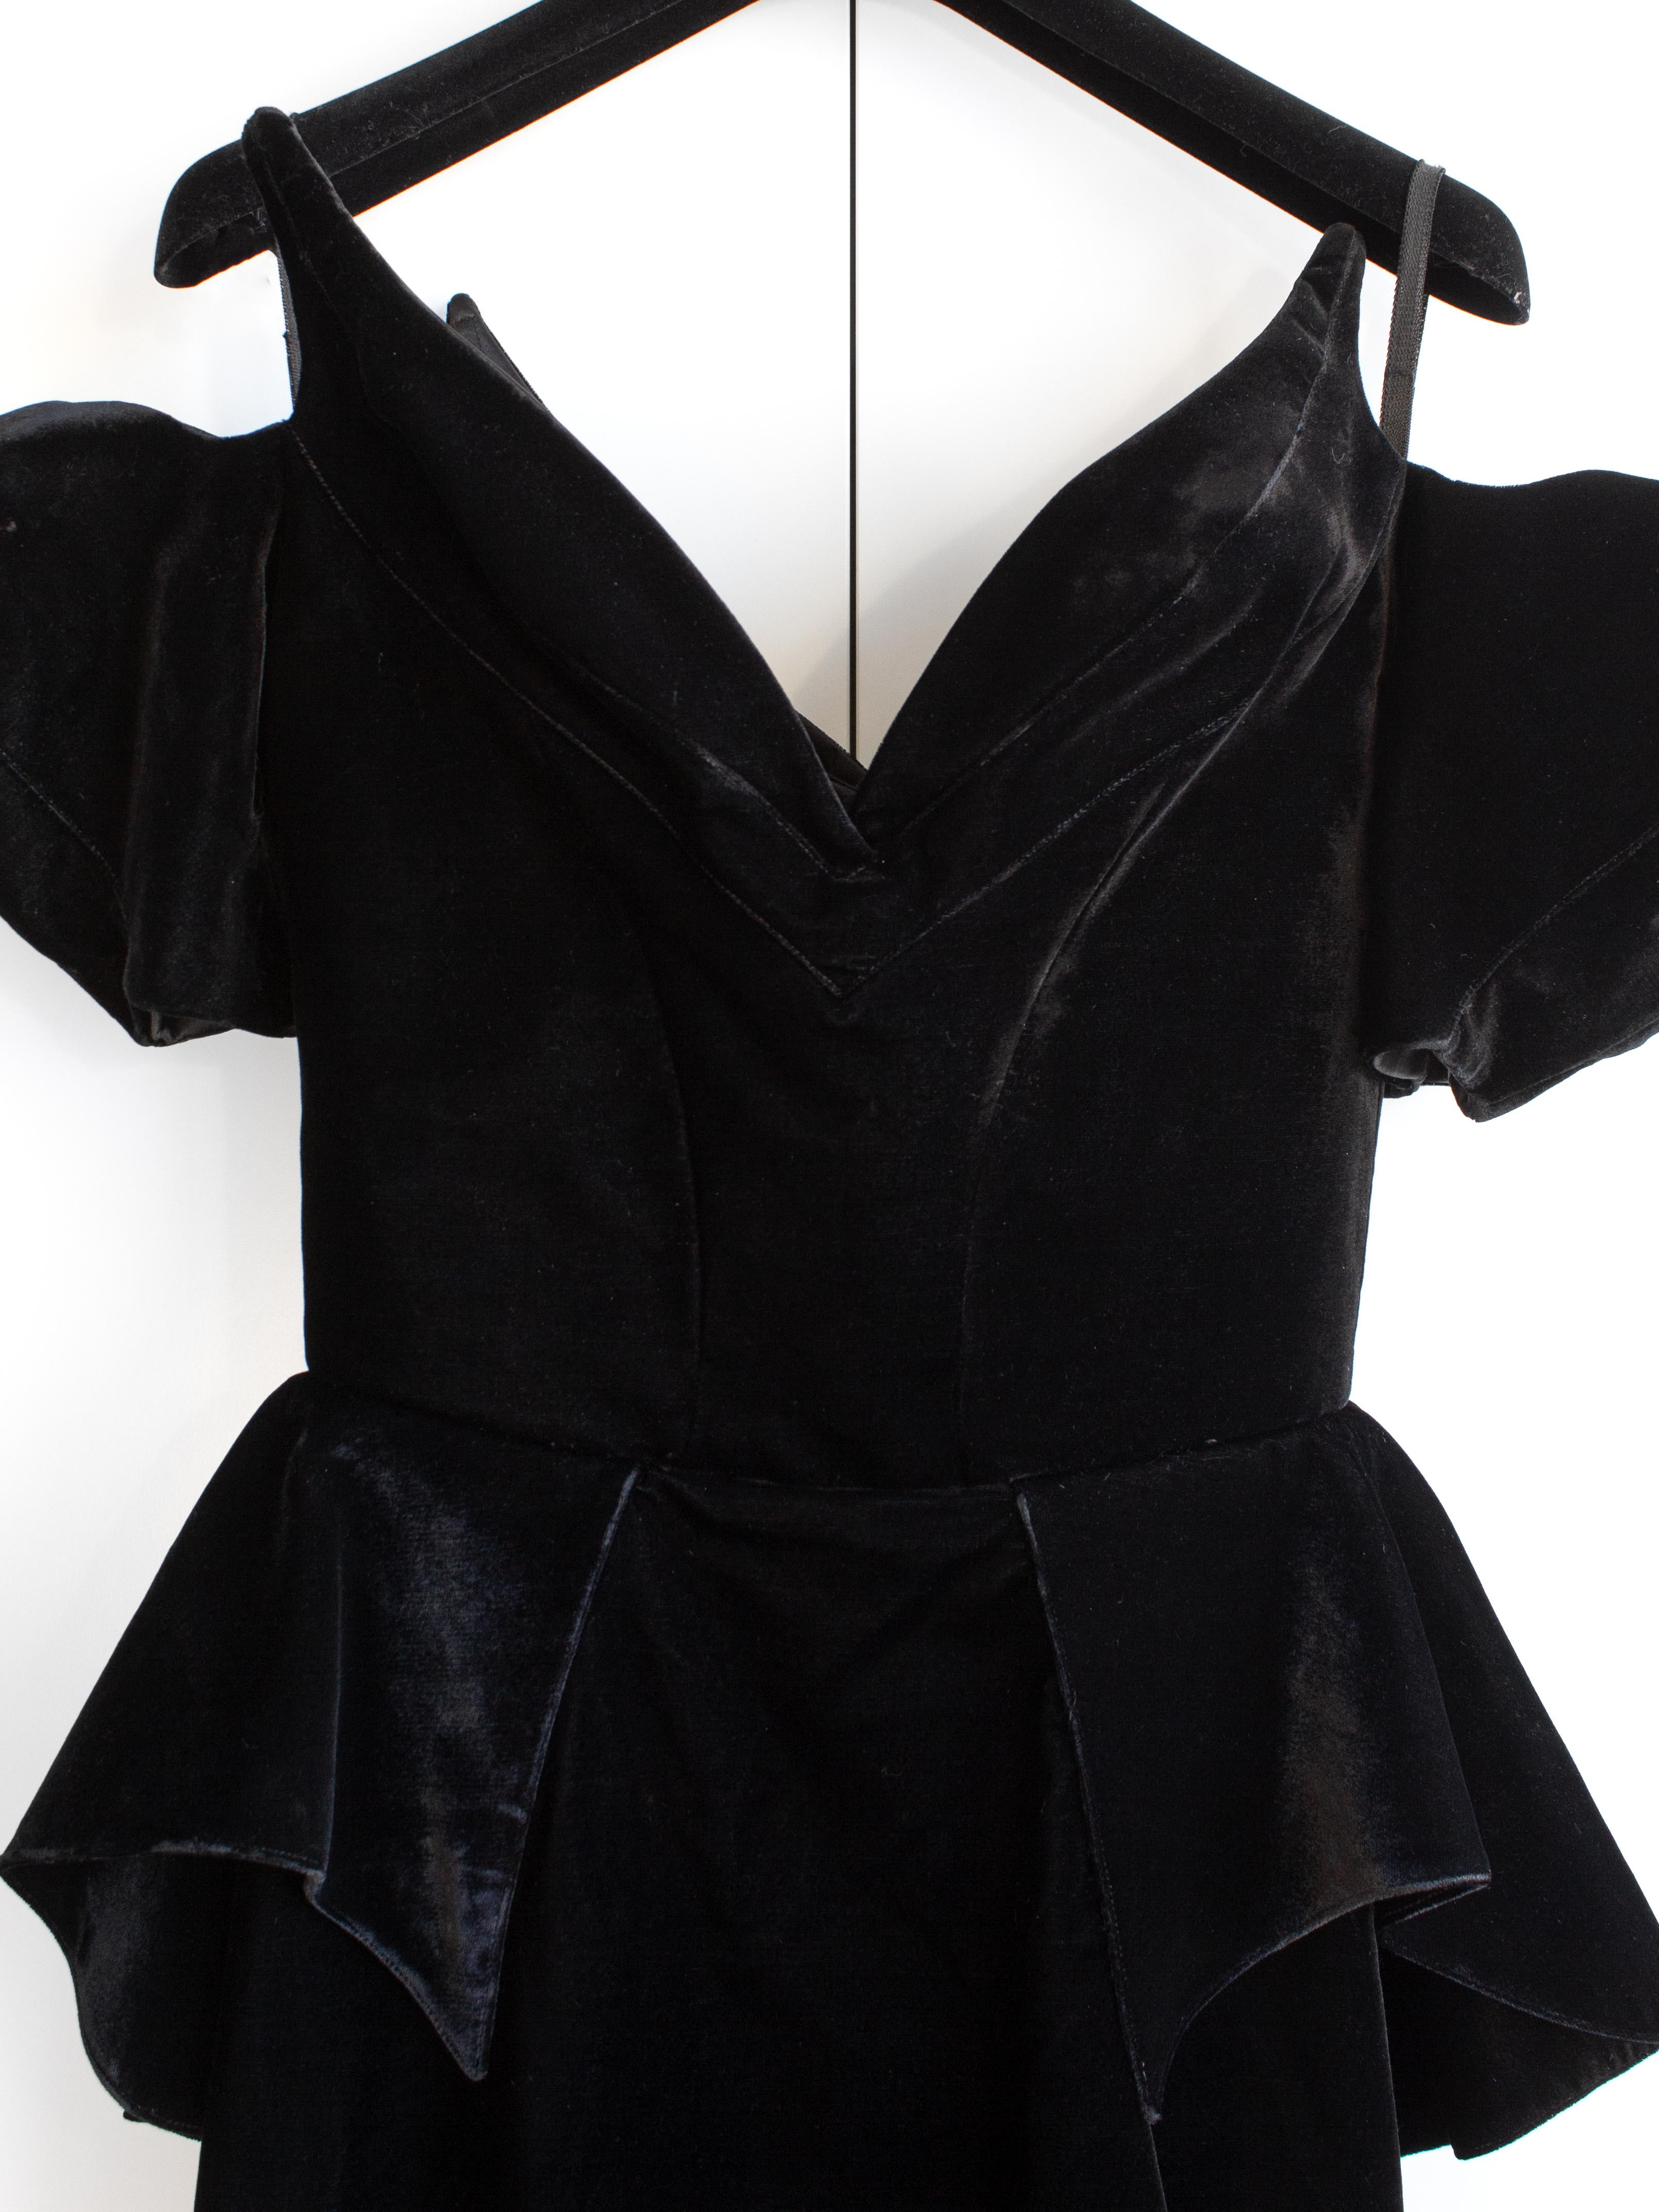 Iconic Thierry Mugler Vintage 1981 Black Velvet Peplum Vampire Dress For Sale 2